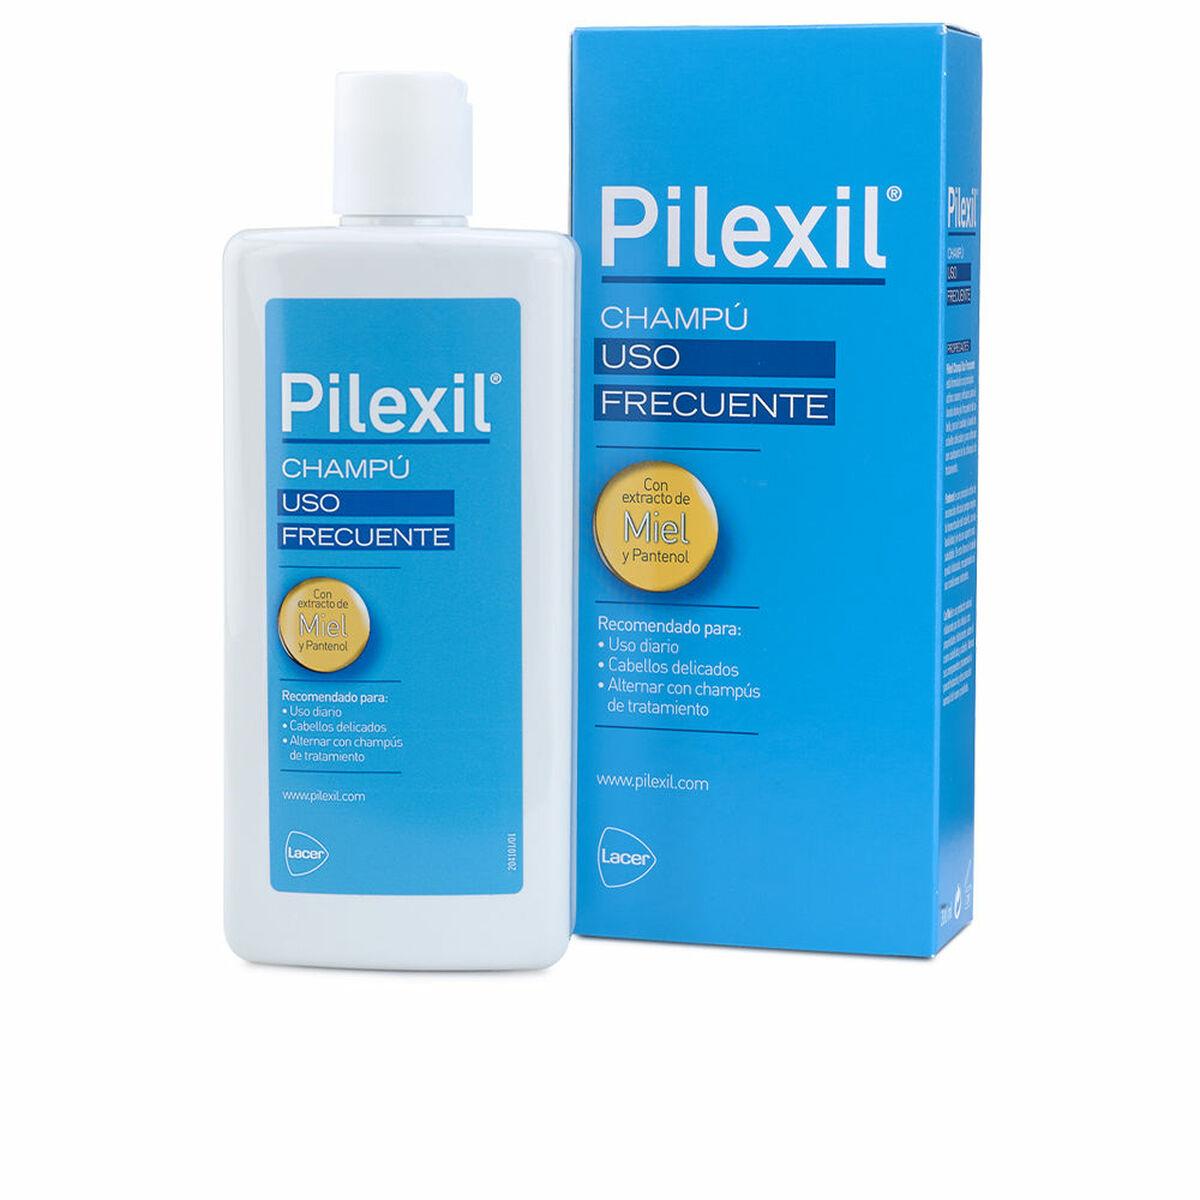 Billede af Daglig brug shampoo Pilexil (300 ml)